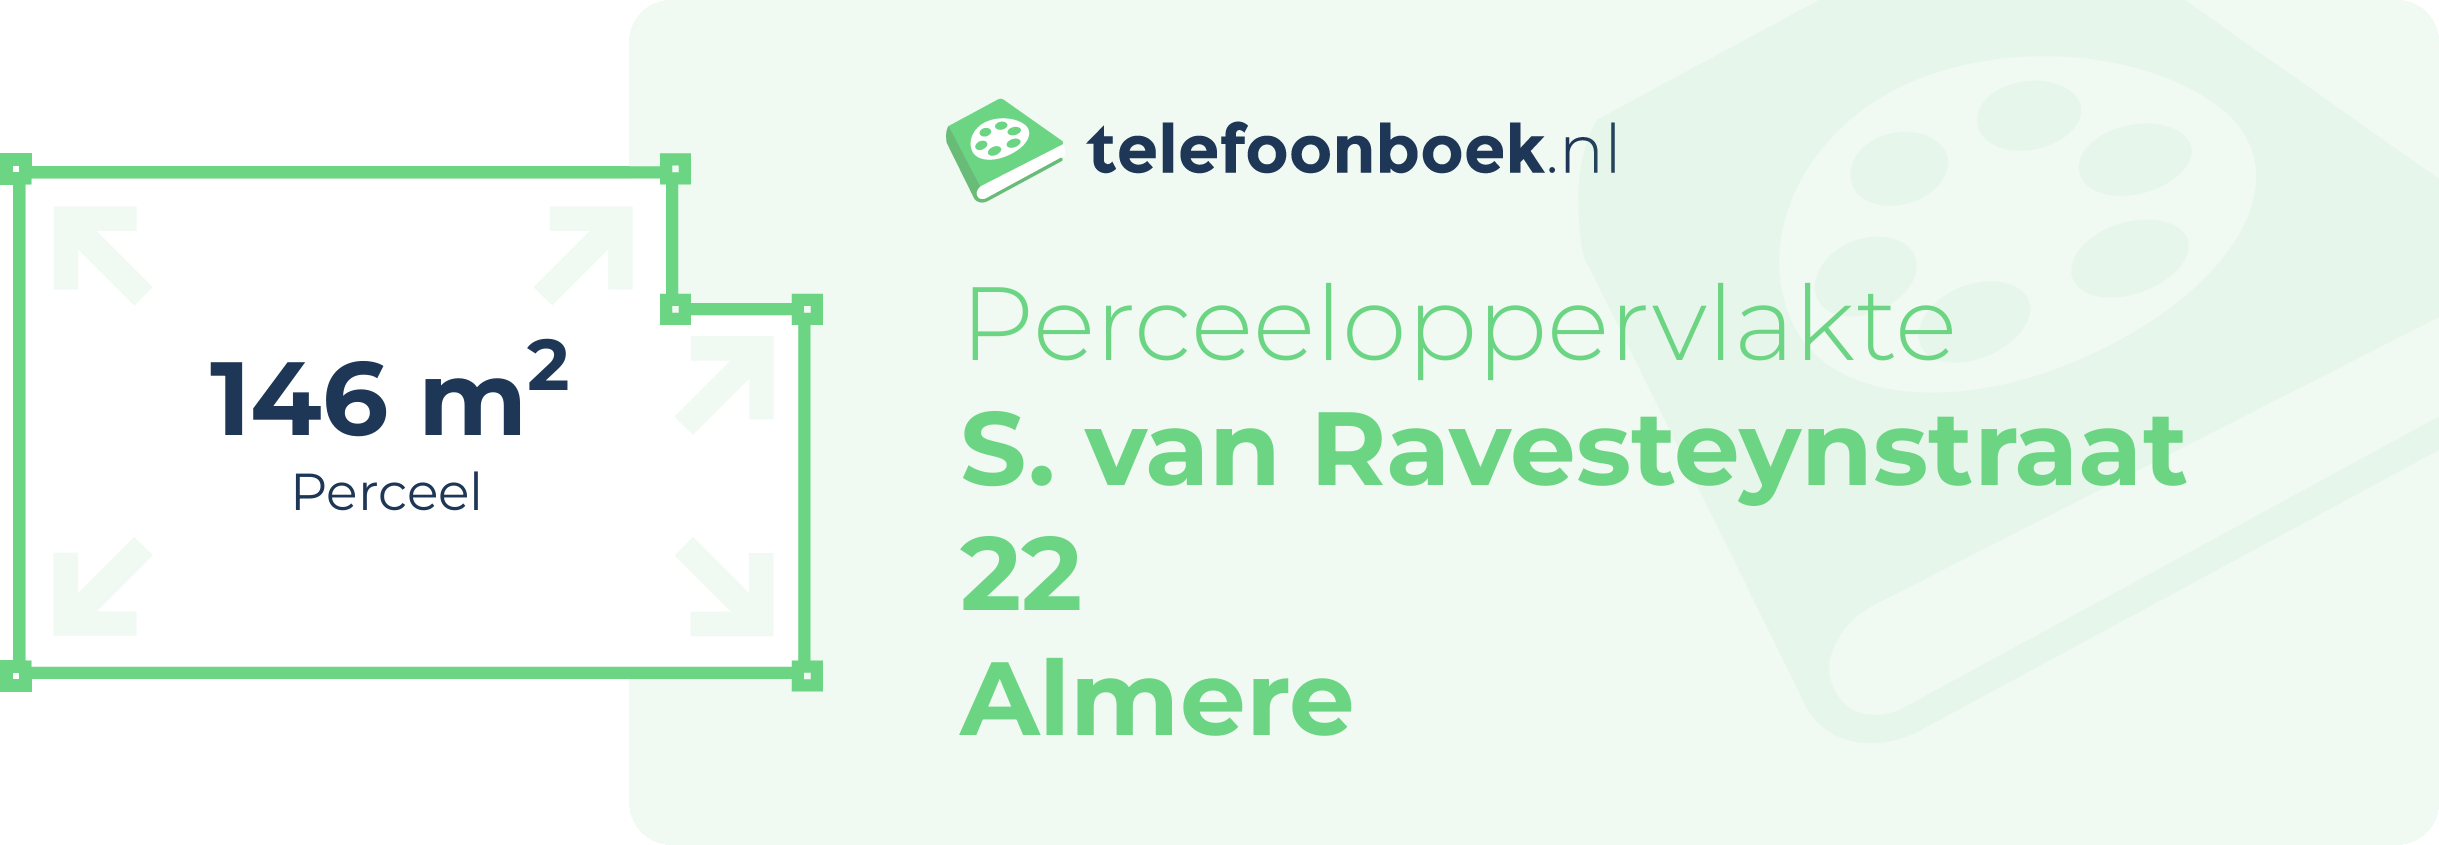 Perceeloppervlakte S. Van Ravesteynstraat 22 Almere